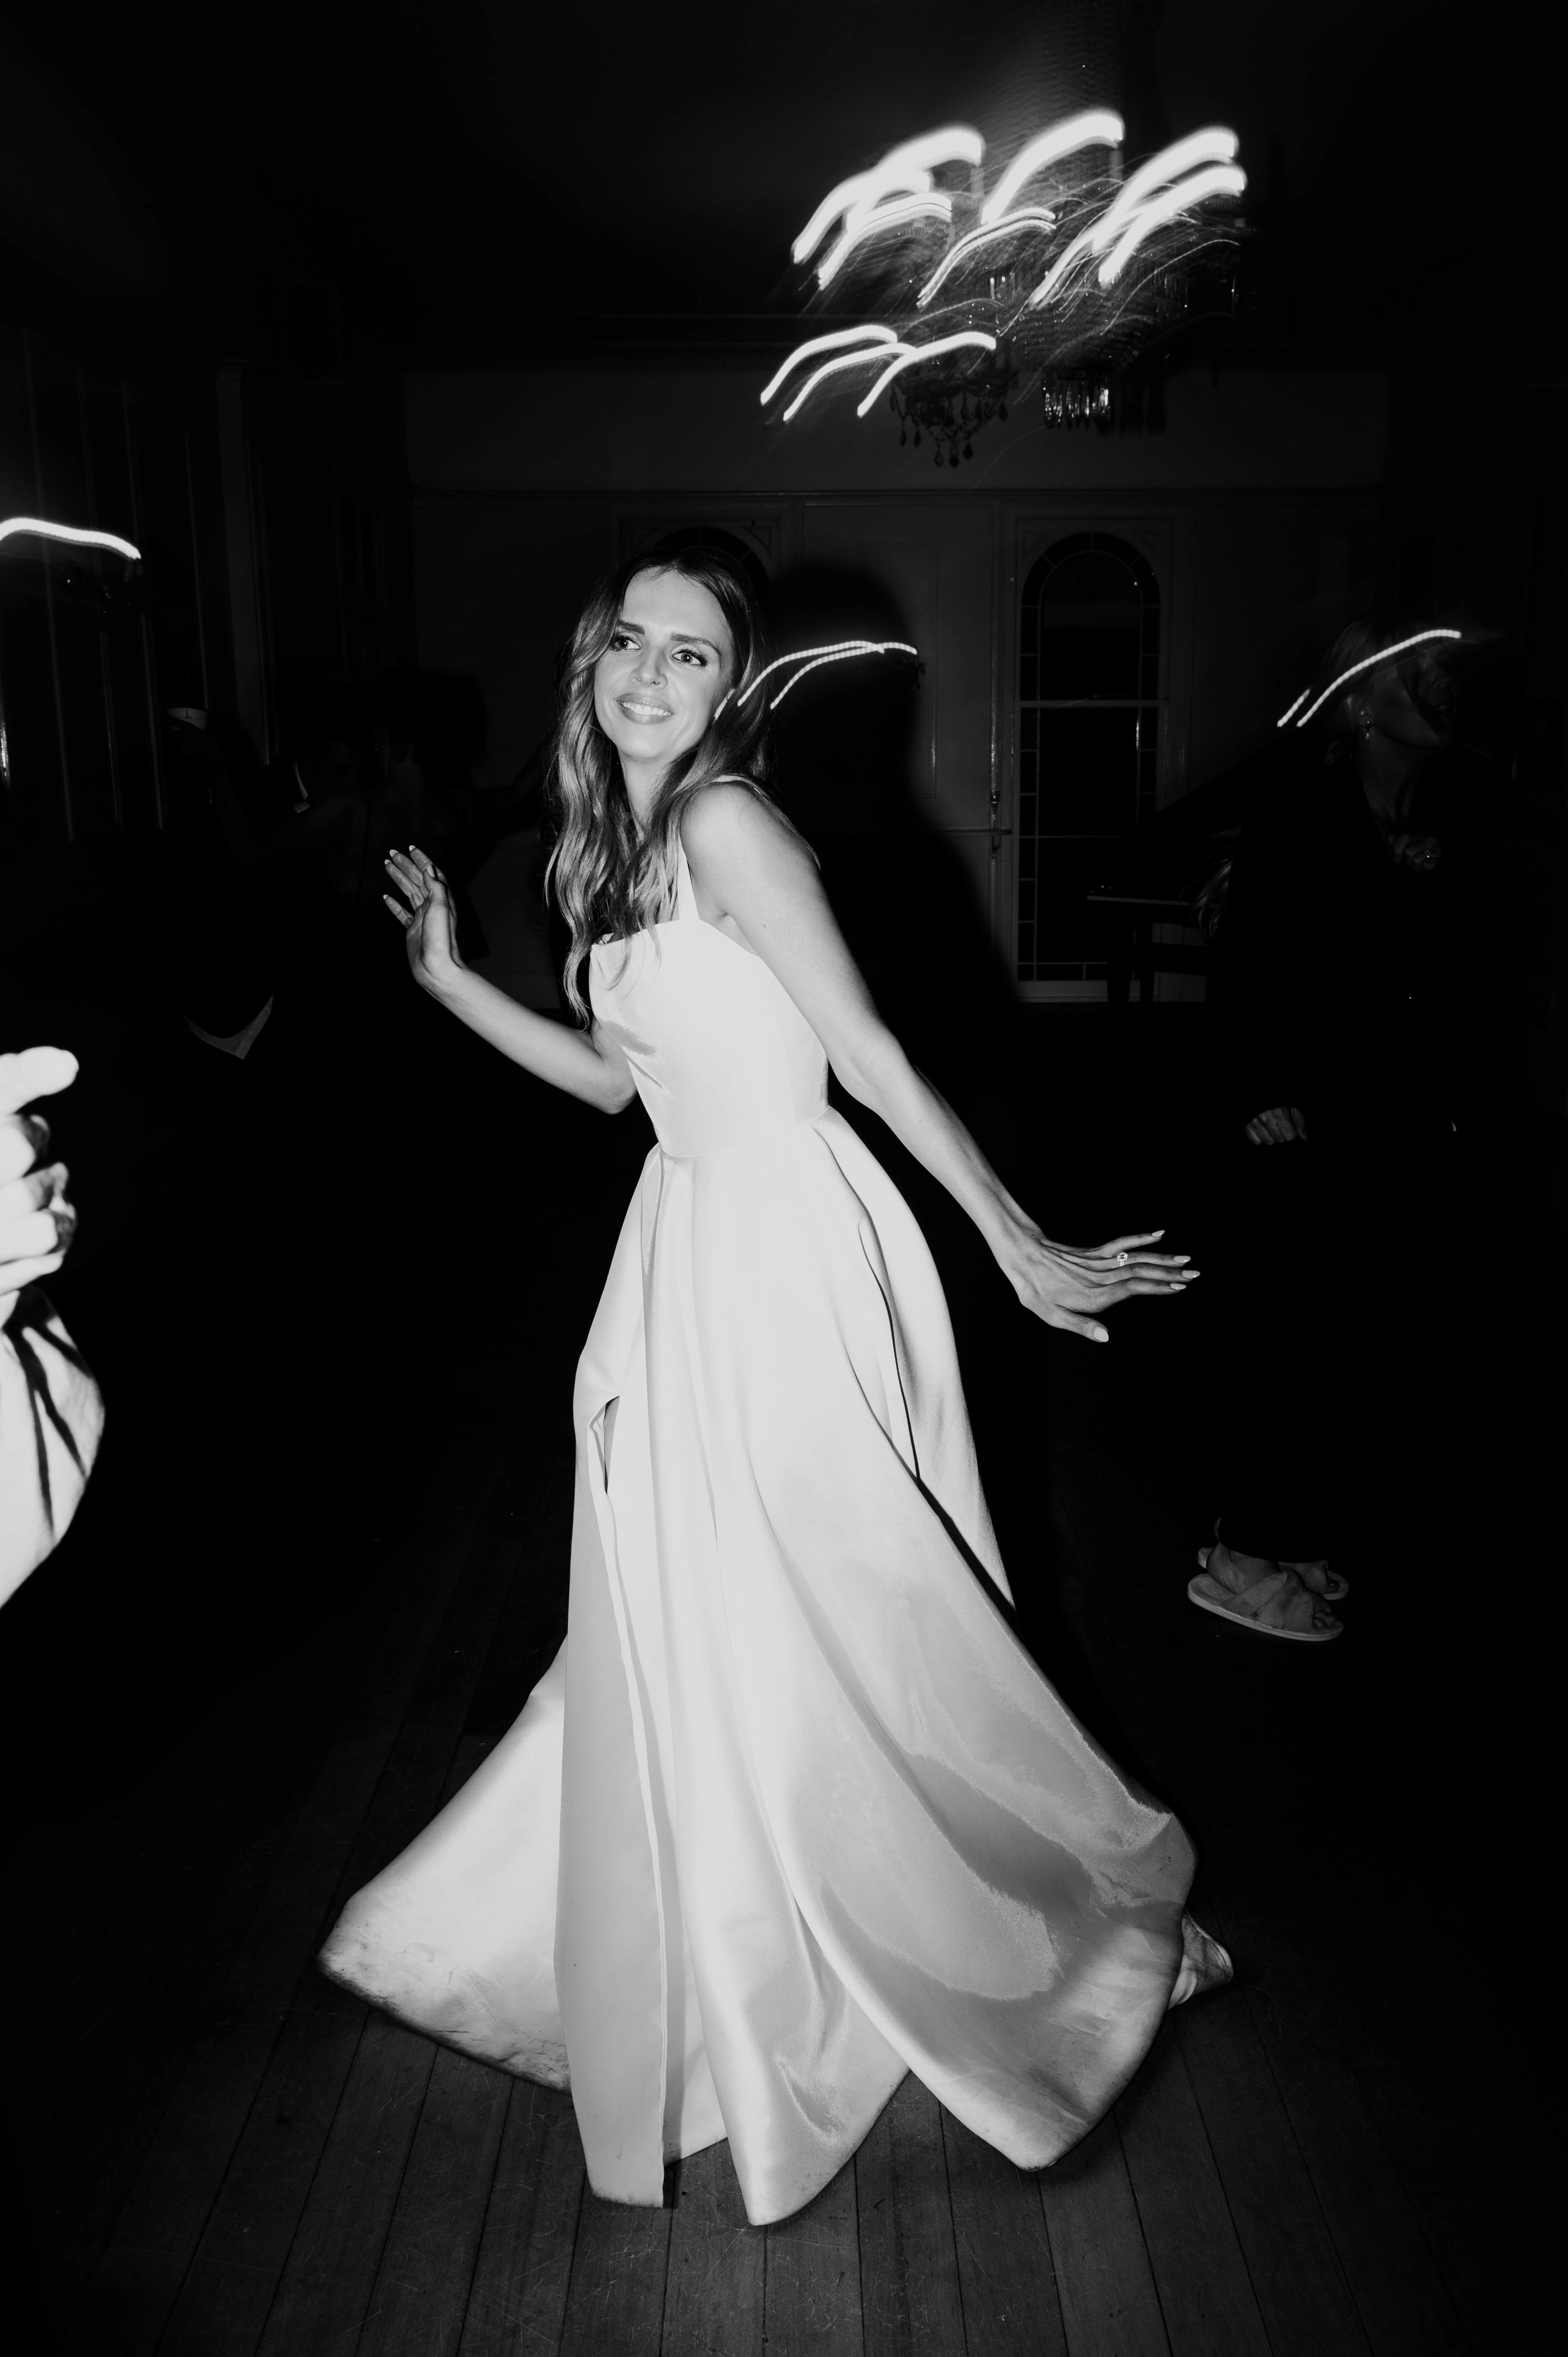 Bride dances in black and white